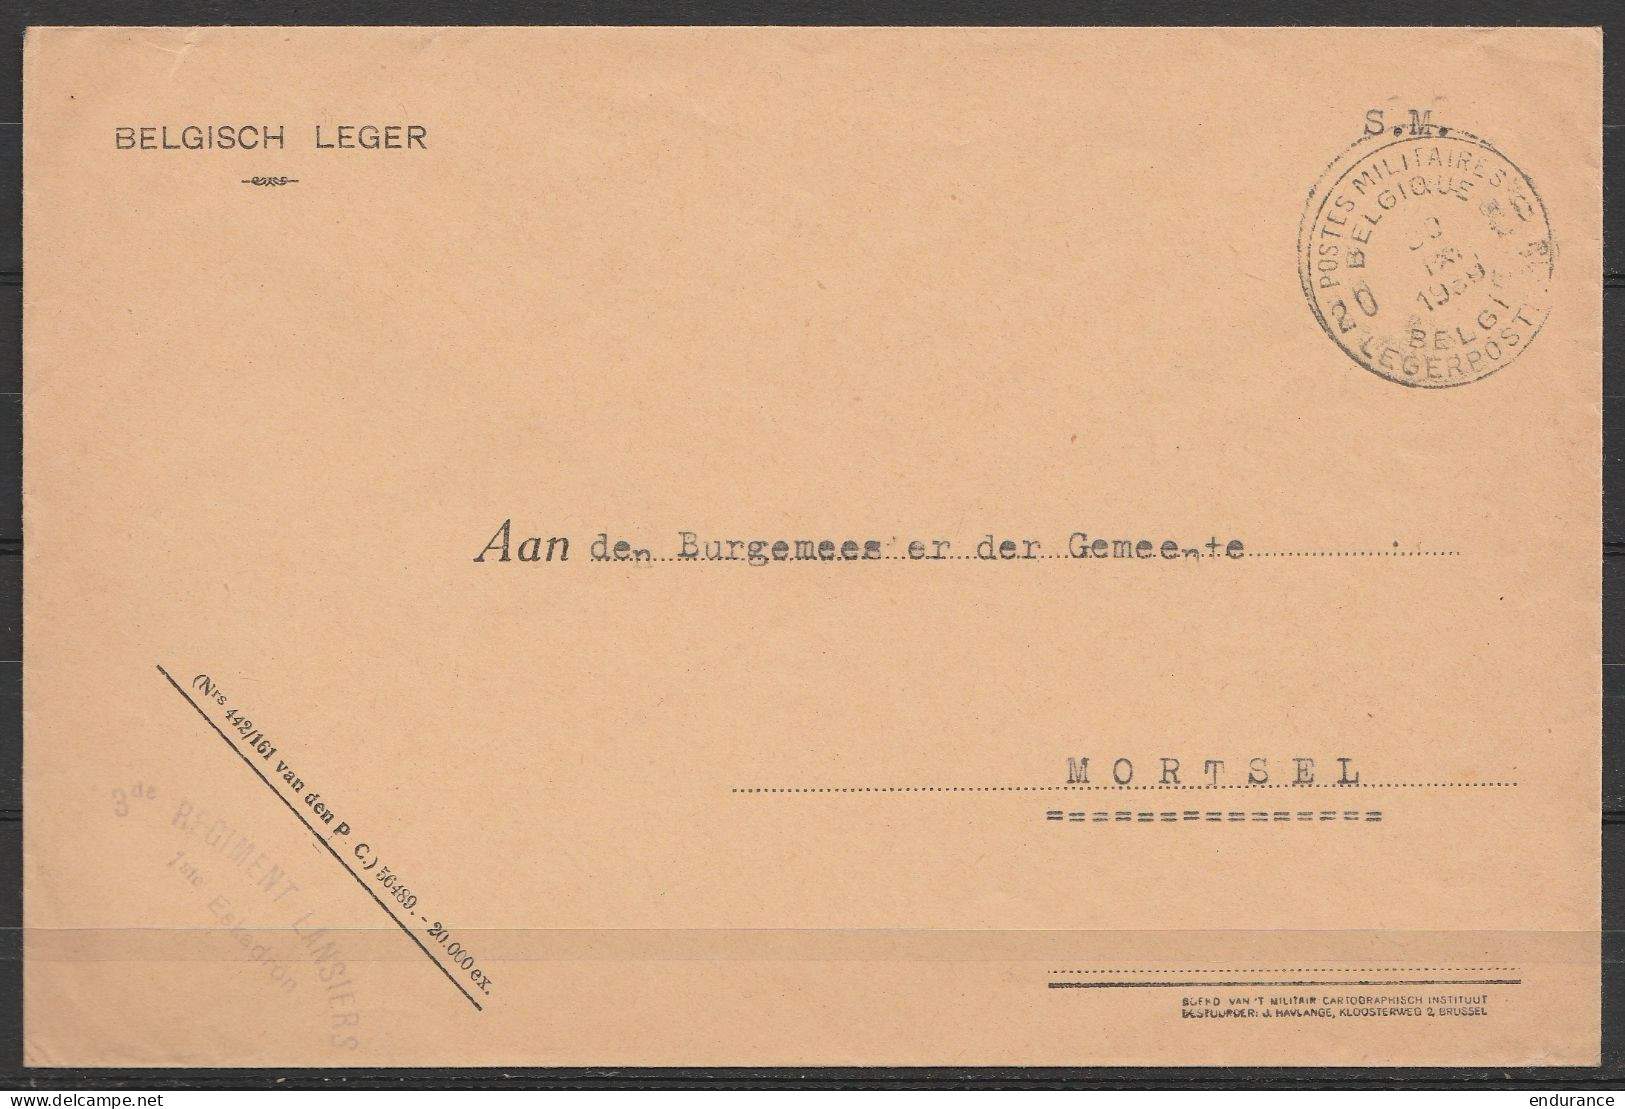 L. Entête "Belgisch Leger" En S.M. (Service Militaire) Franchise - Càd POSTES MILITAIRES BELGIQUE 20/30 IX 1939 - Griffe - Covers & Documents